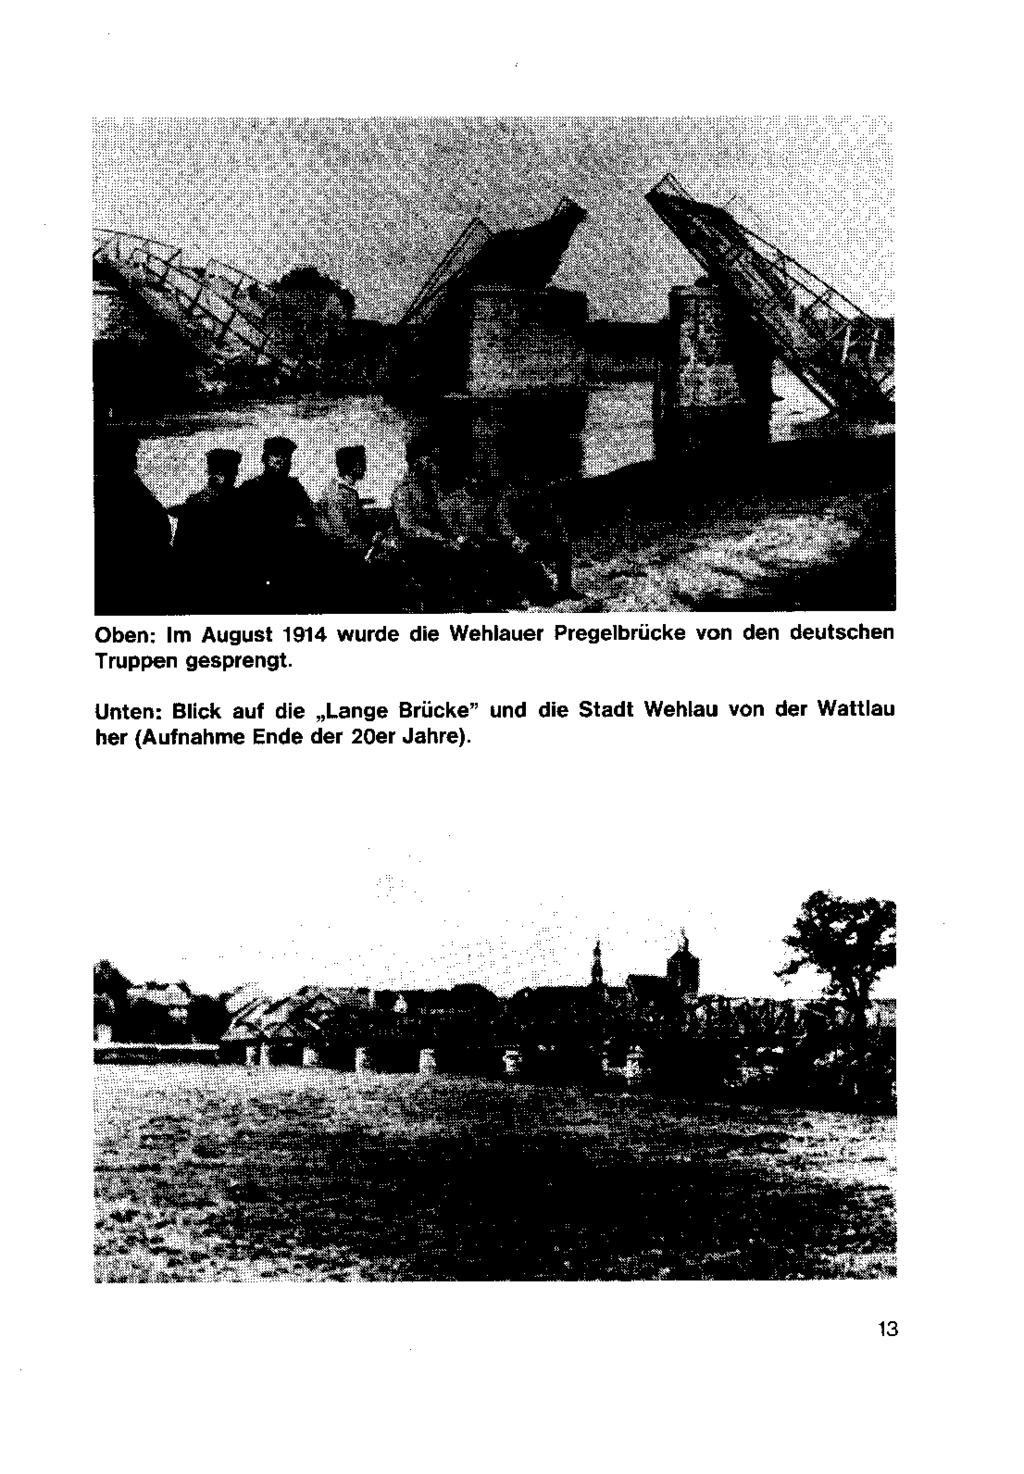 Oben: Im August 1914 wurde die Wehlauer Pregelbrücke von den deutschen Truppen gesprengt Unten: